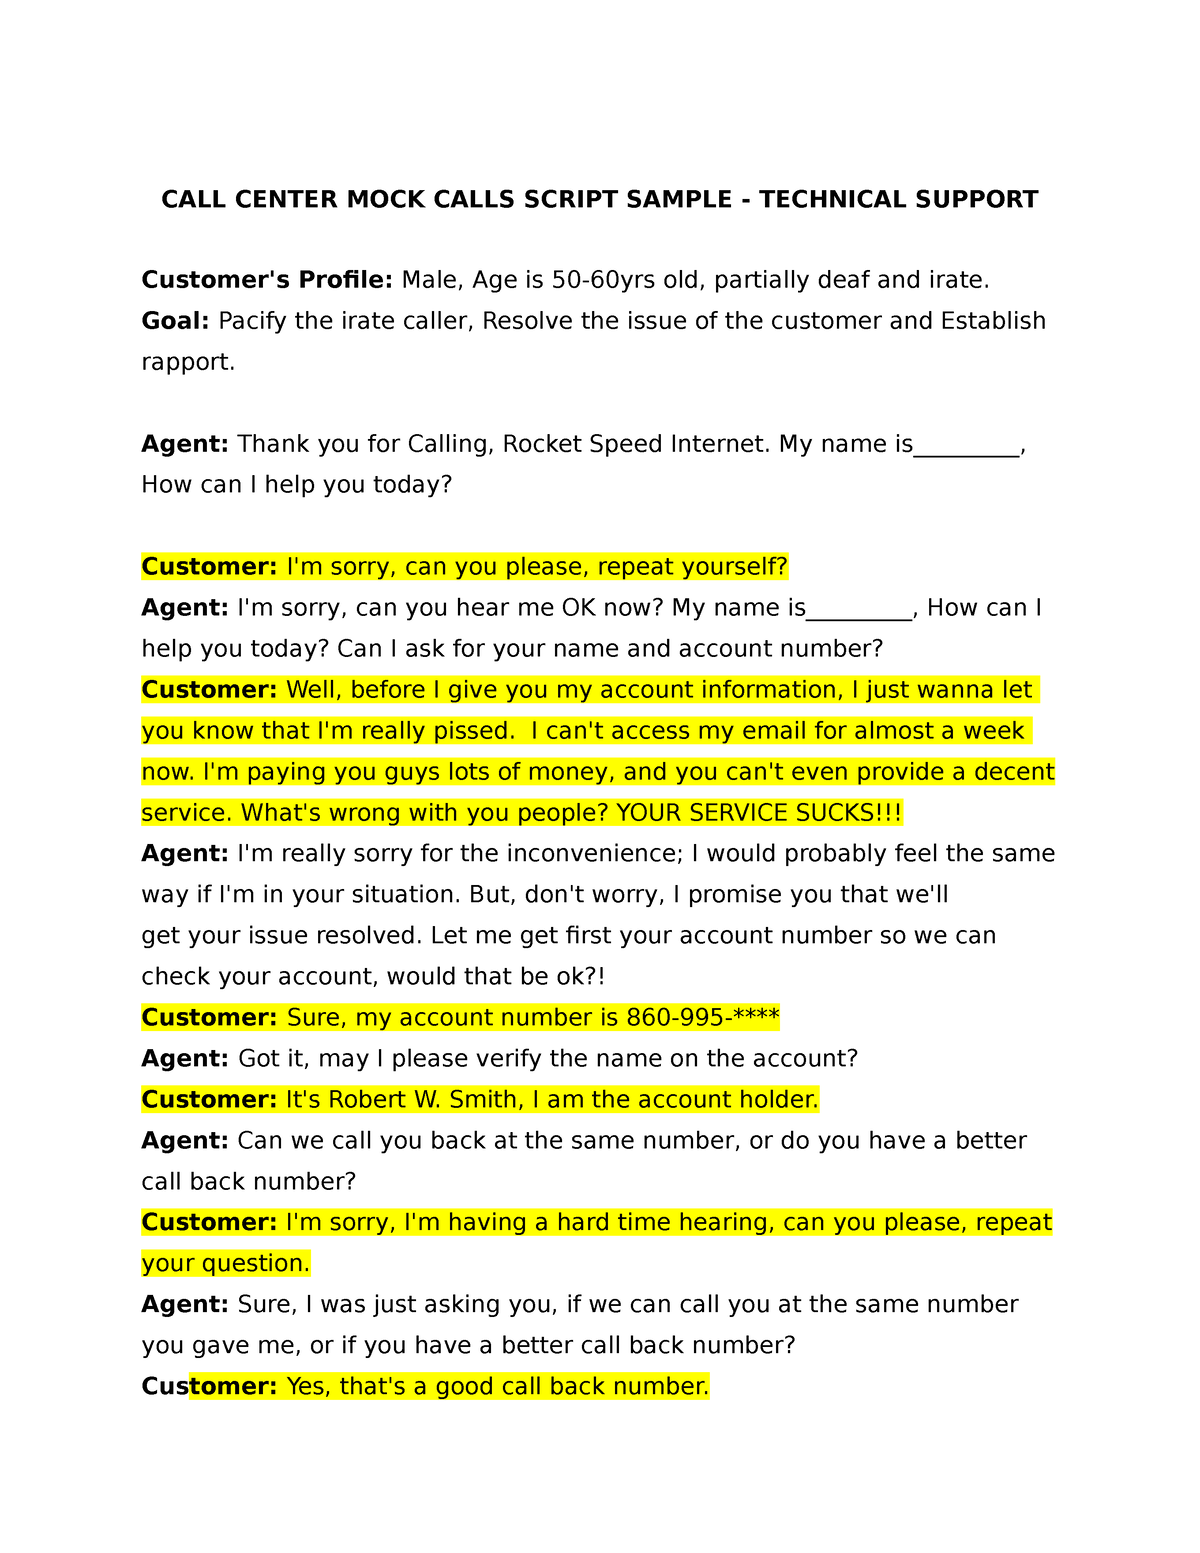 mock-calls-script-sample-call-center-mock-calls-script-sample